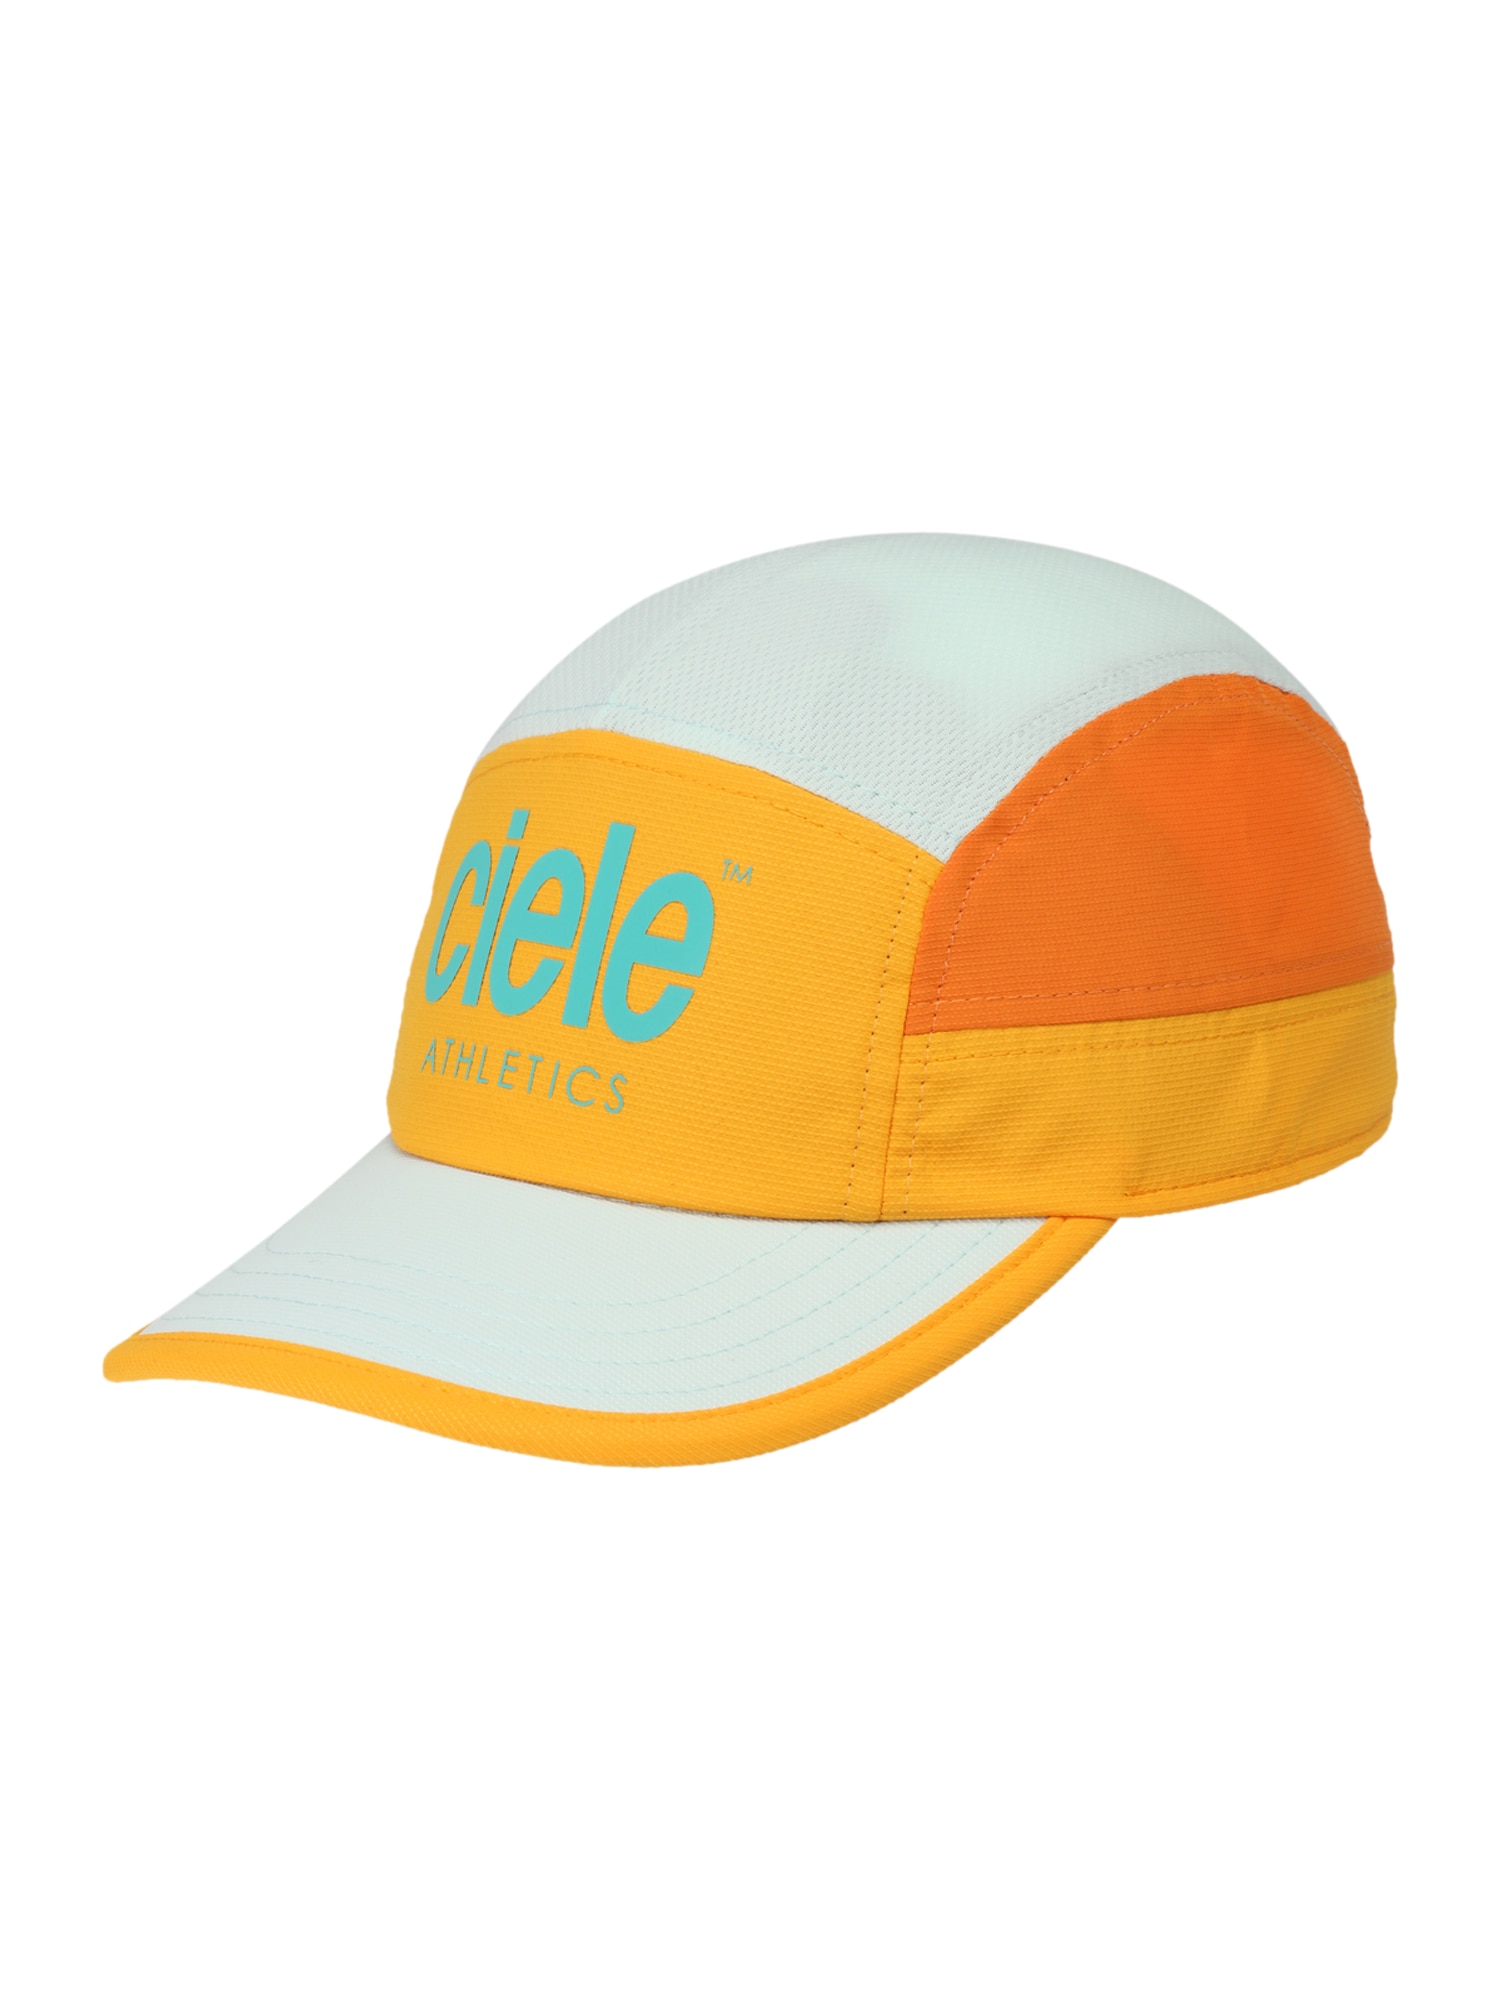 CIELE ATHLETICS Sportinė kepurė 'Crush' oranžinė / šviesiai oranžinė / nefrito spalva / pastelinė žalia